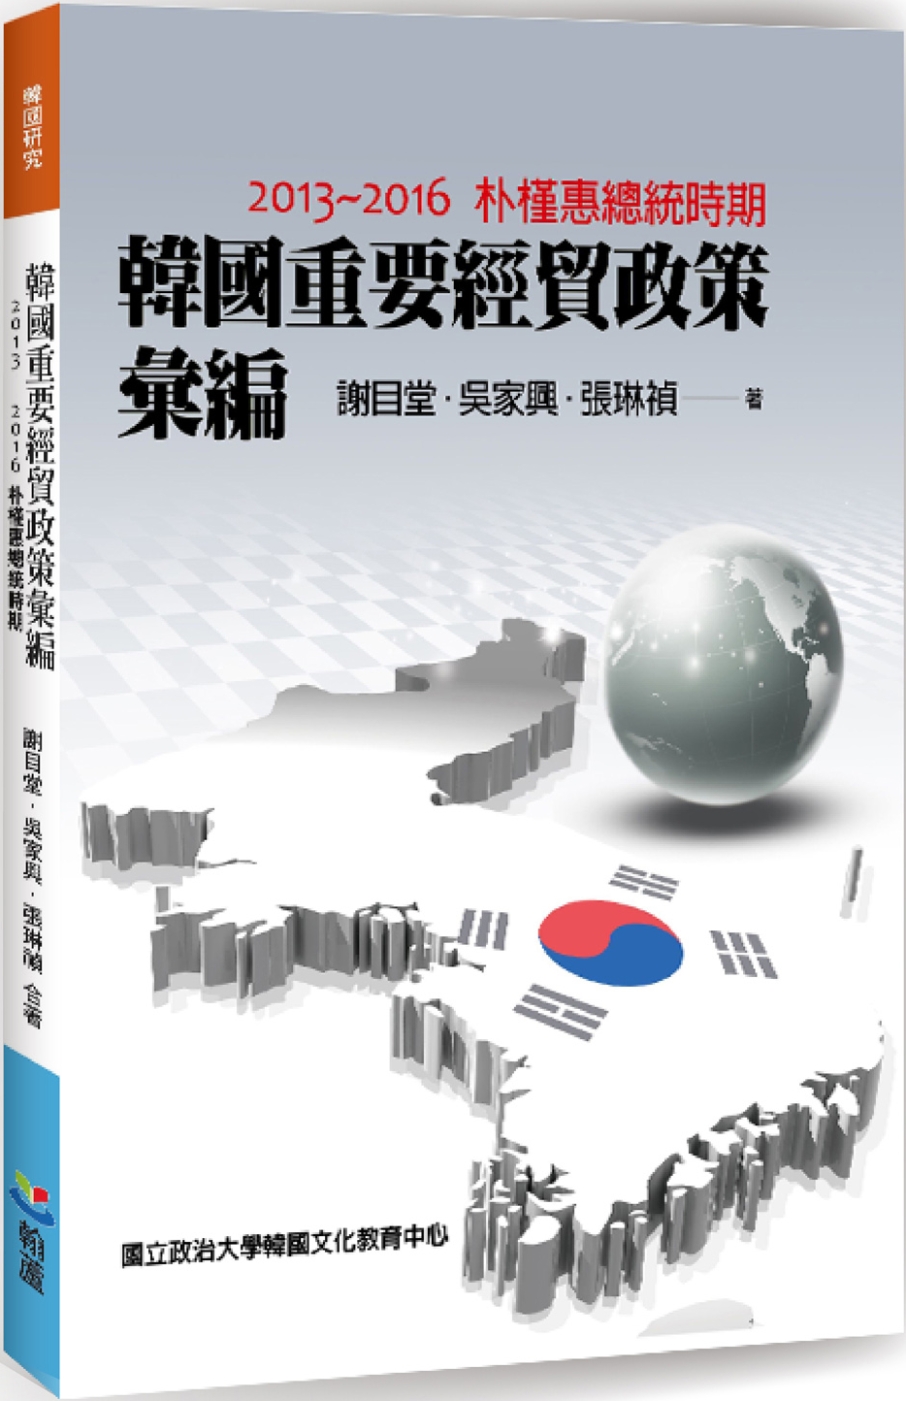 韓國重要經貿政策彙編：2013-2016朴槿惠總統時期